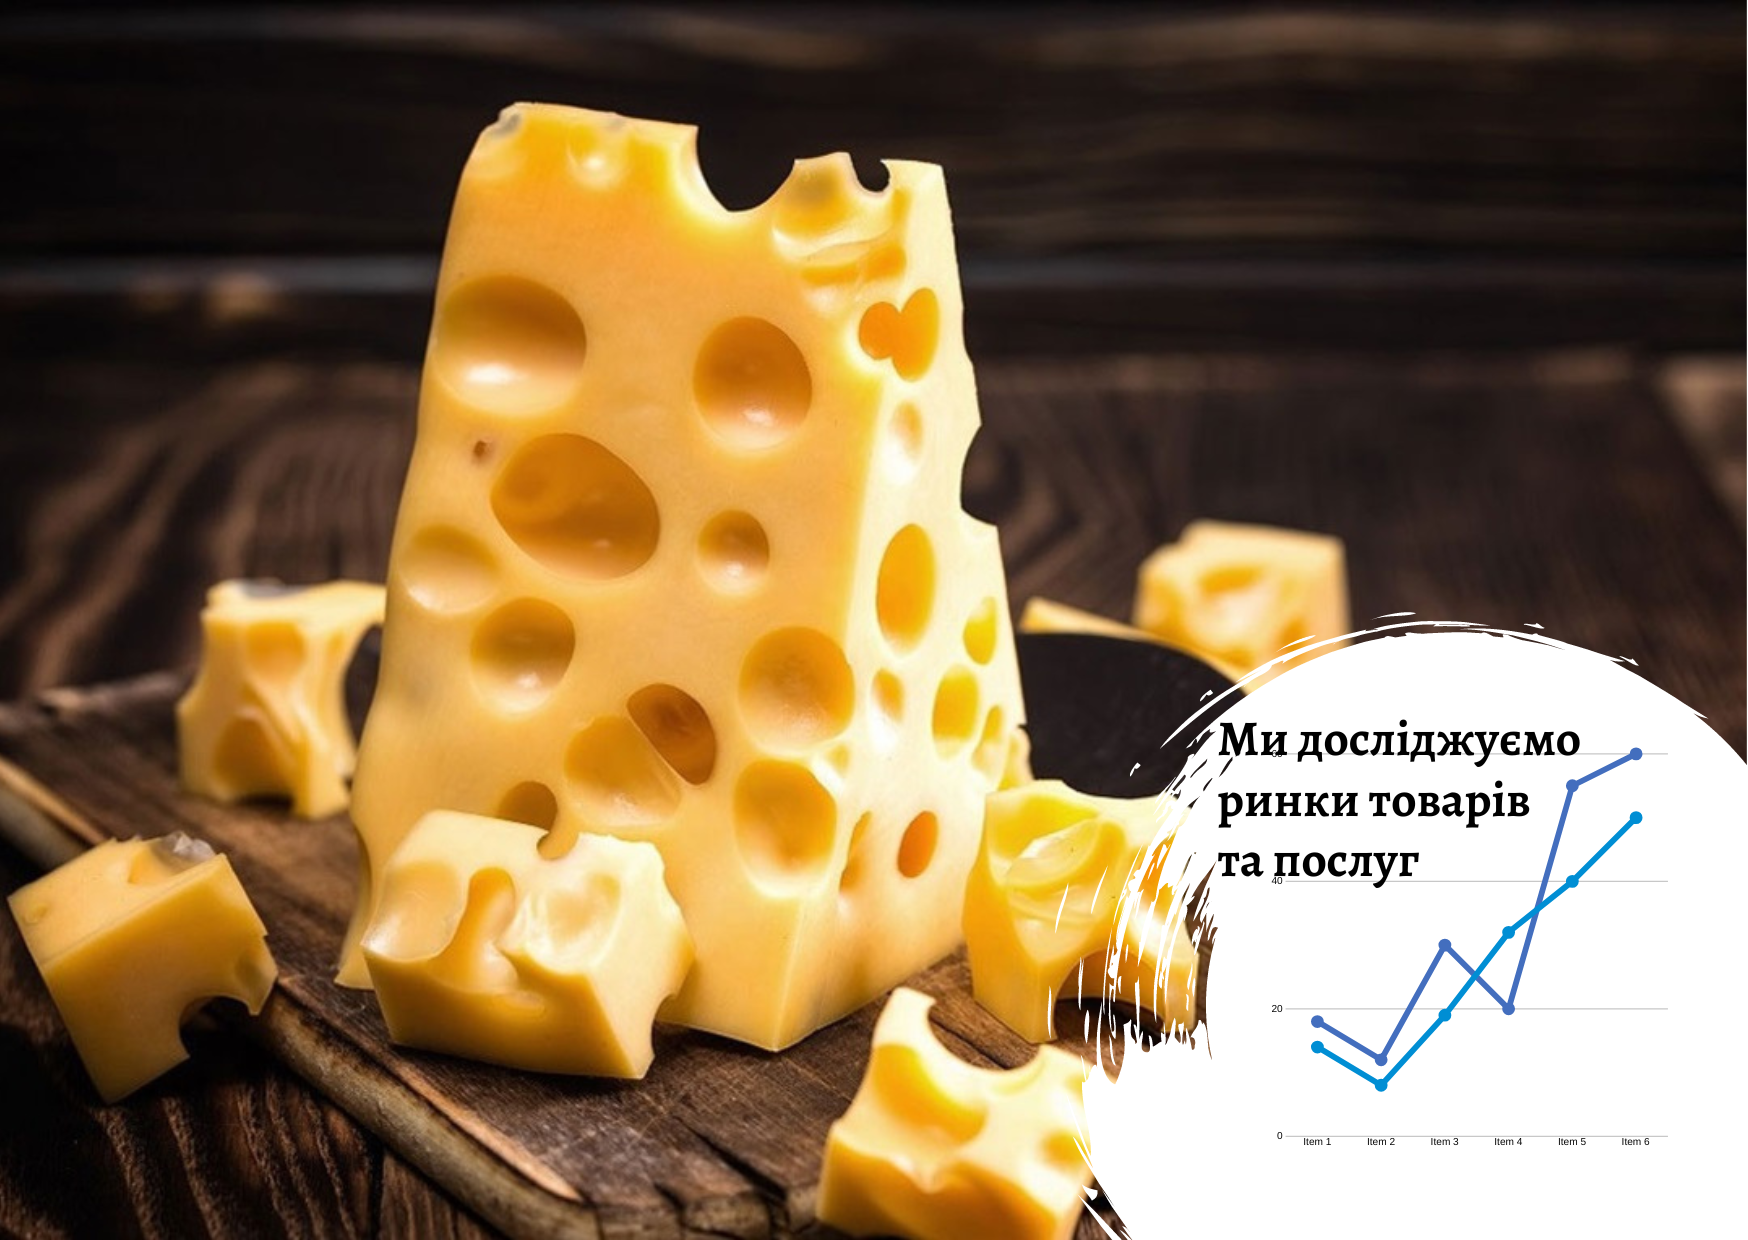 Ukrainian cheese market: analytical report